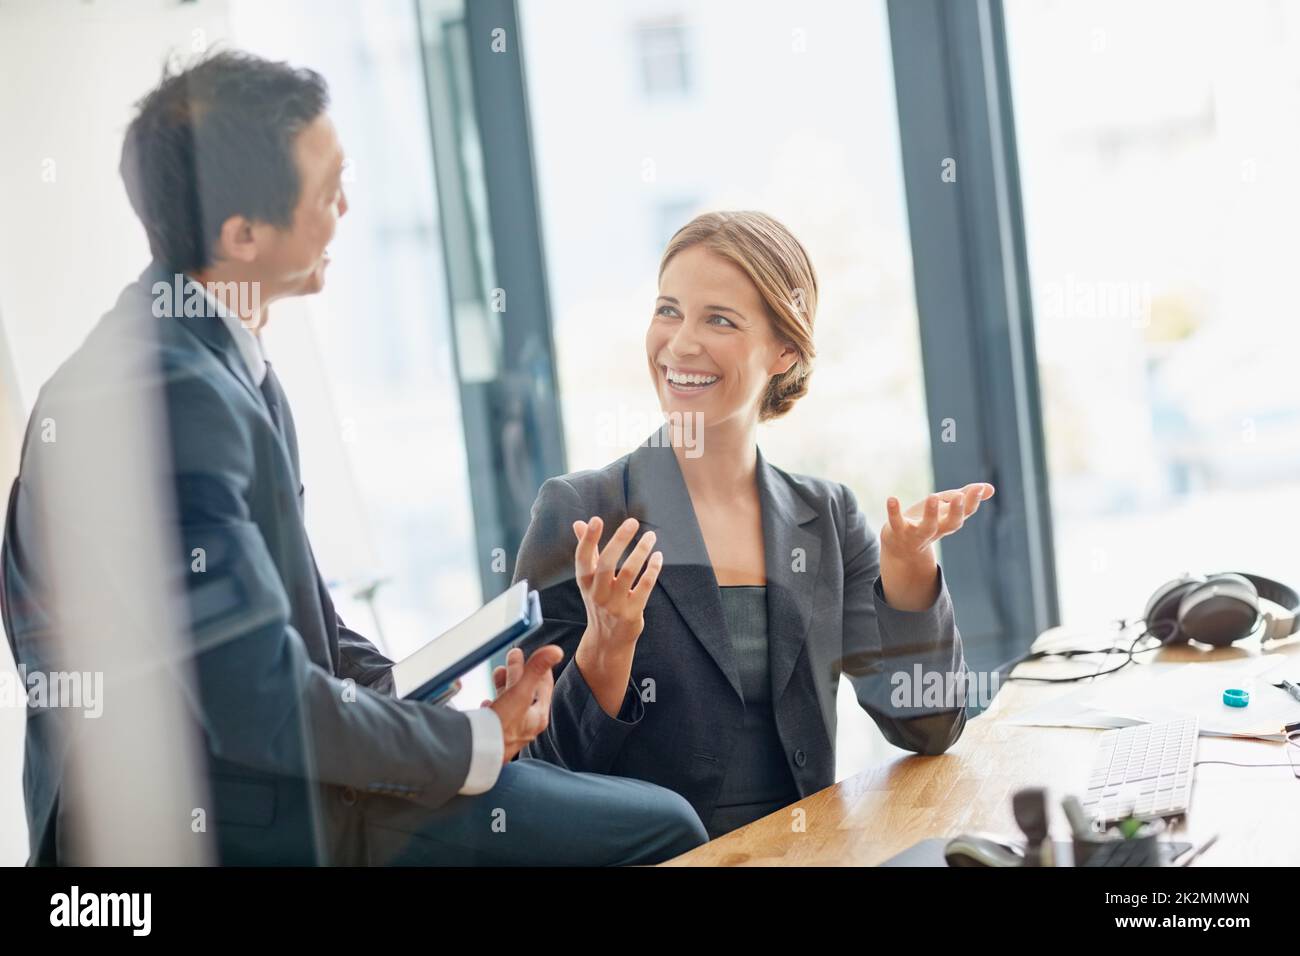 Communiquez vos idées avec passion et clarté. Photo de deux hommes d'affaires ayant une discussion dans un bureau. Banque D'Images